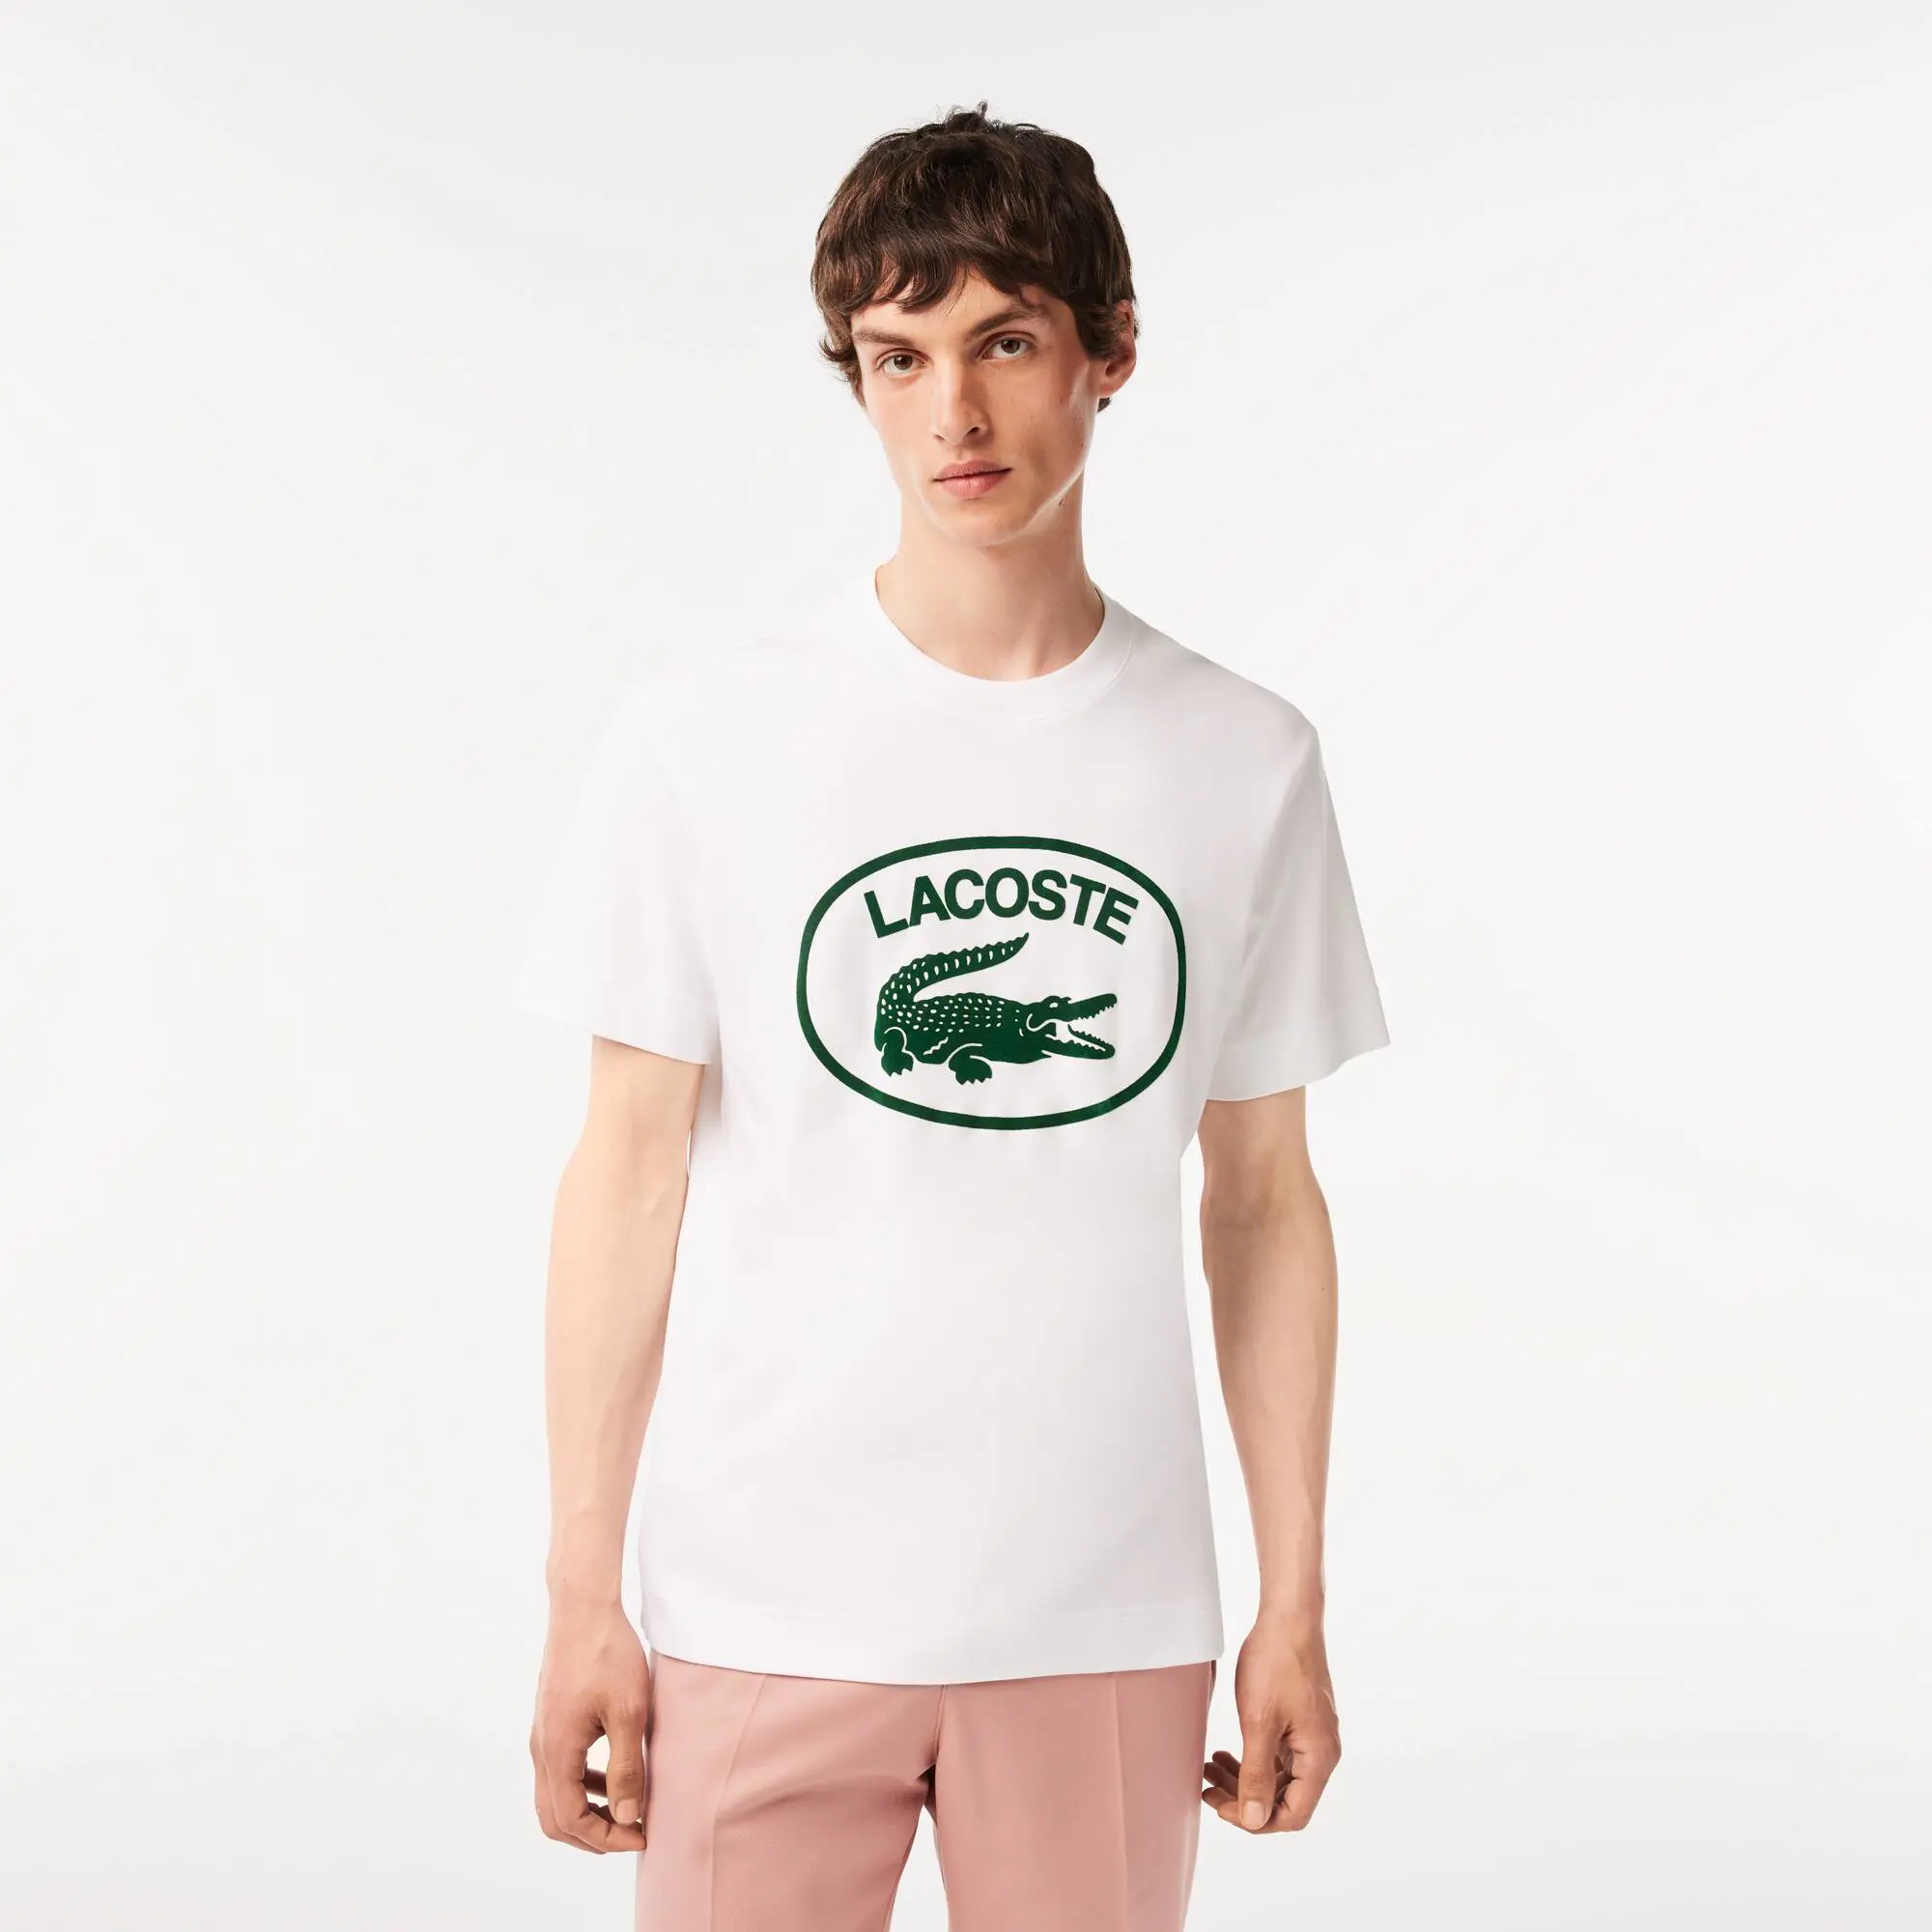 Lacoste T-shirt da uomo in cotone con logo tono tono, relaxed fit. 1